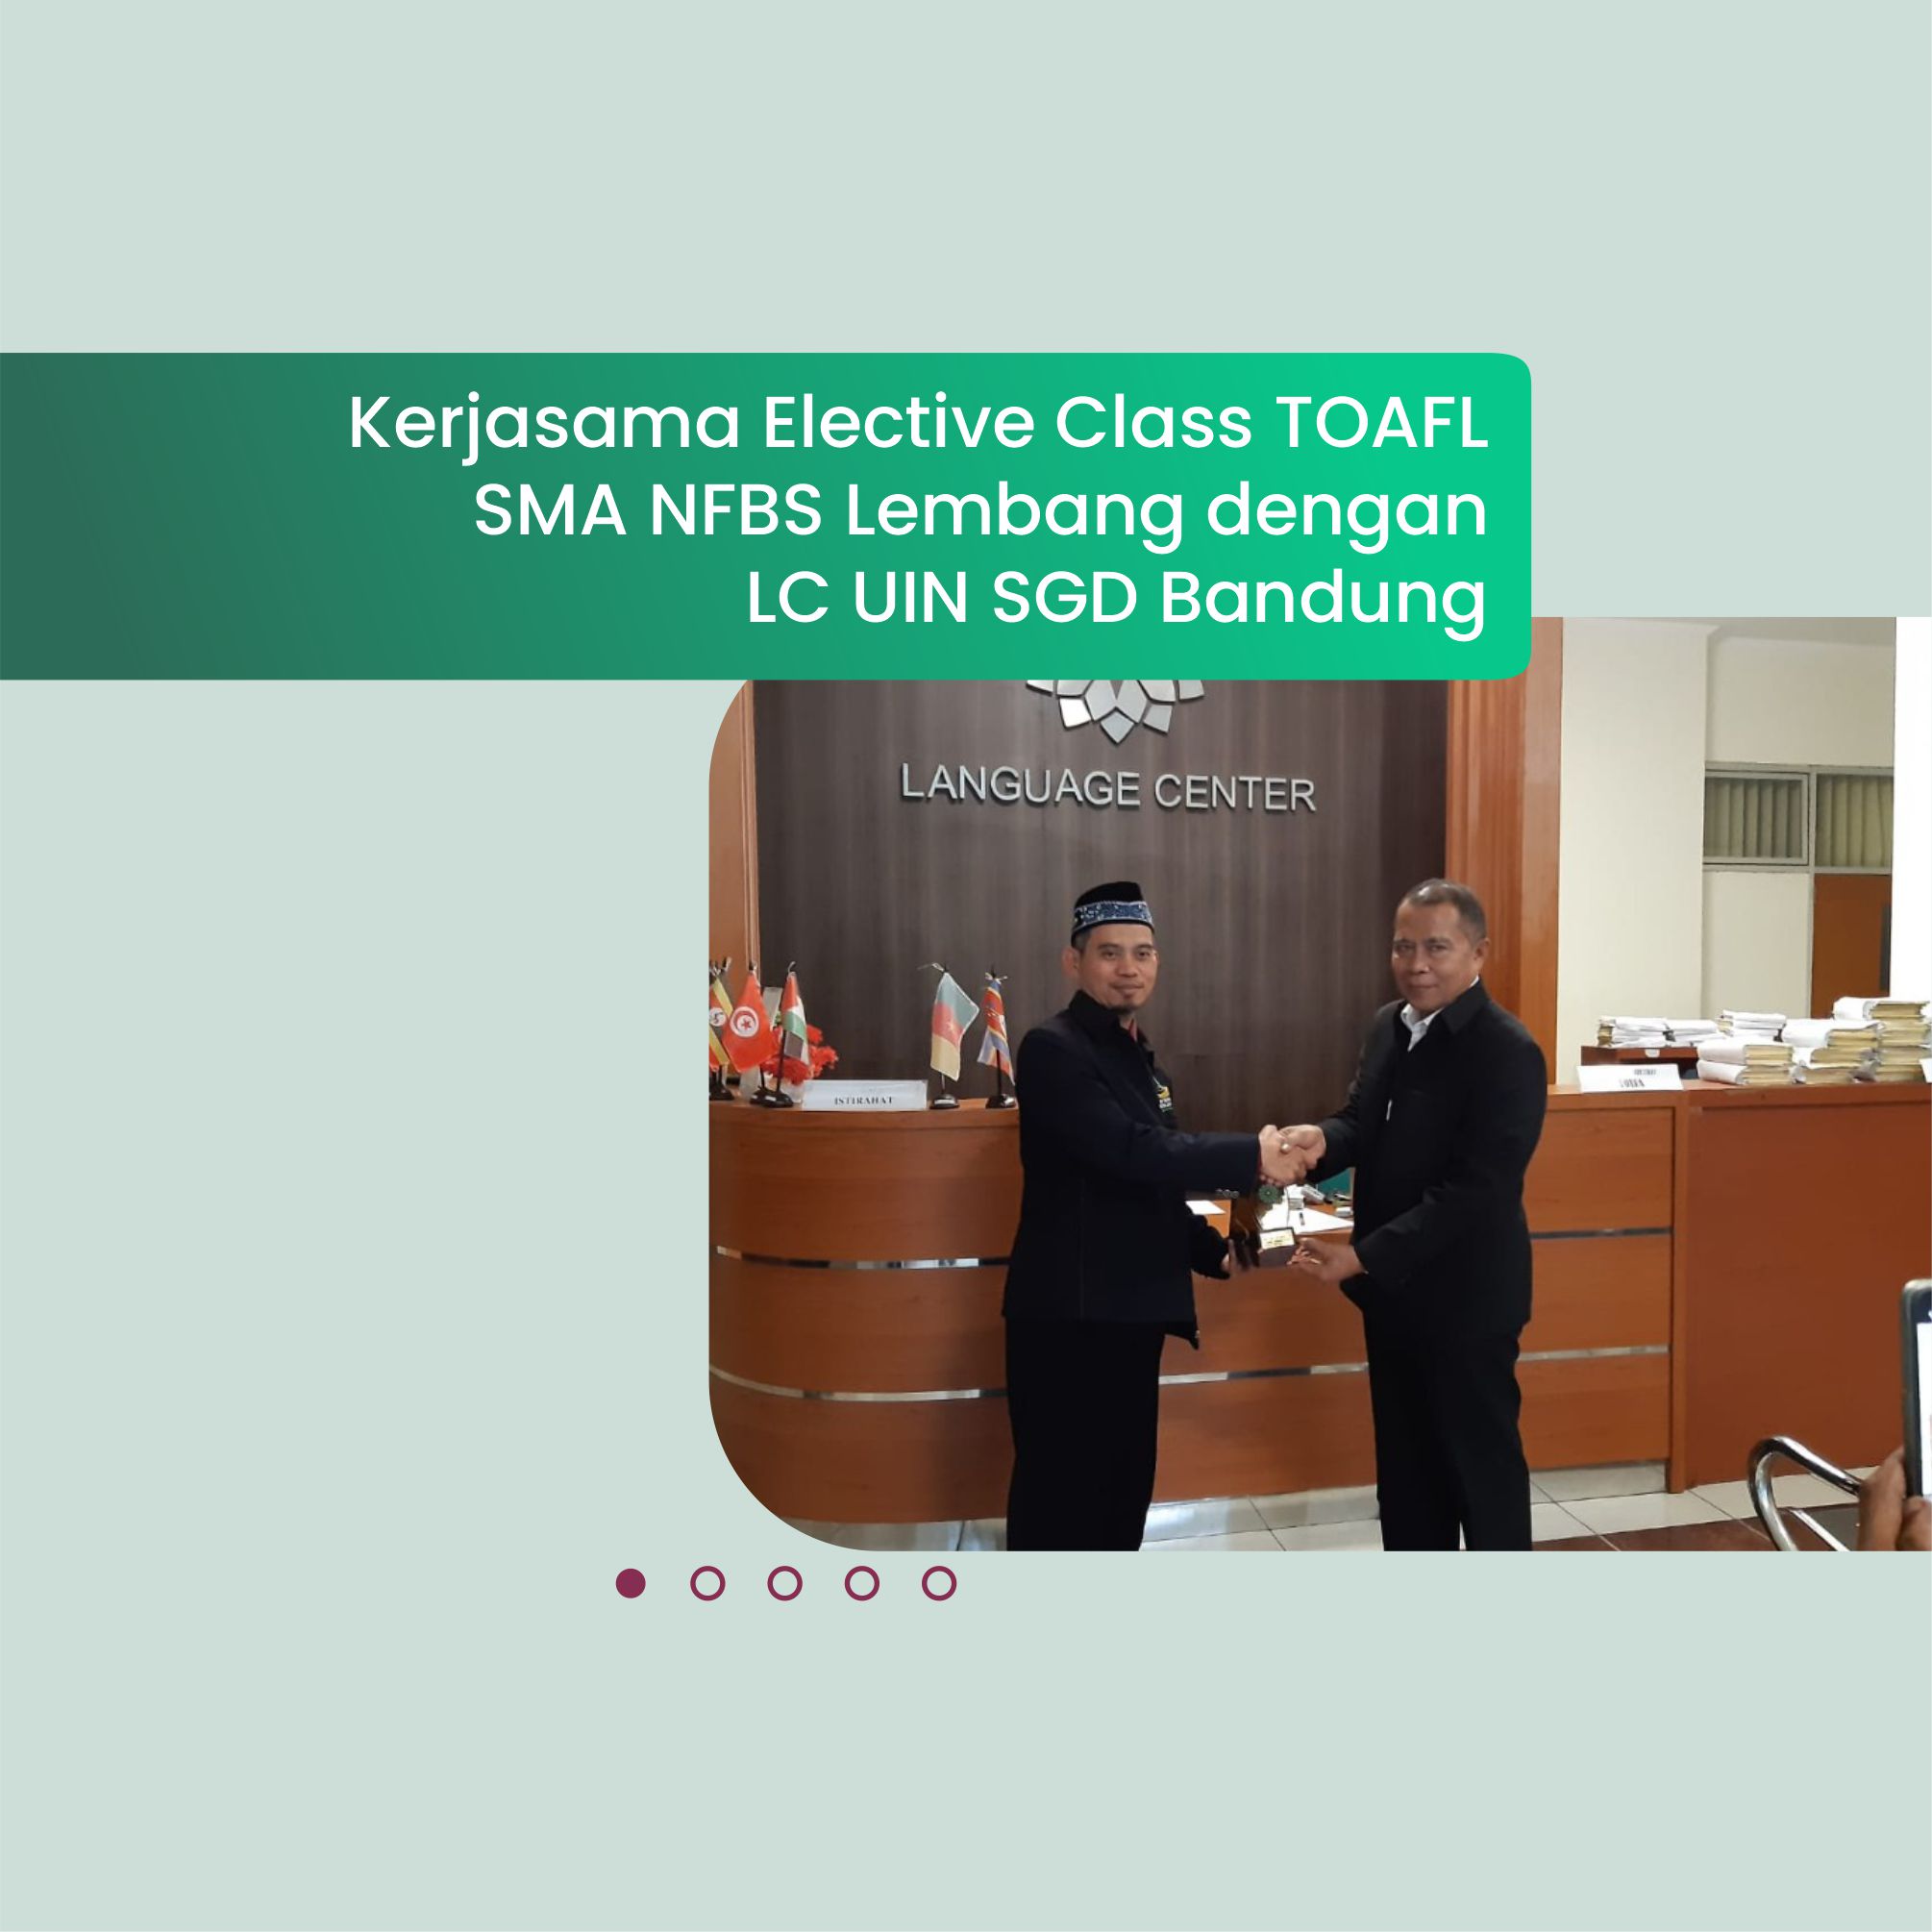 Kerjasama Elective Class TOAFL antara SMA NFBS Lembang dengan LC UIN SGD Bandung